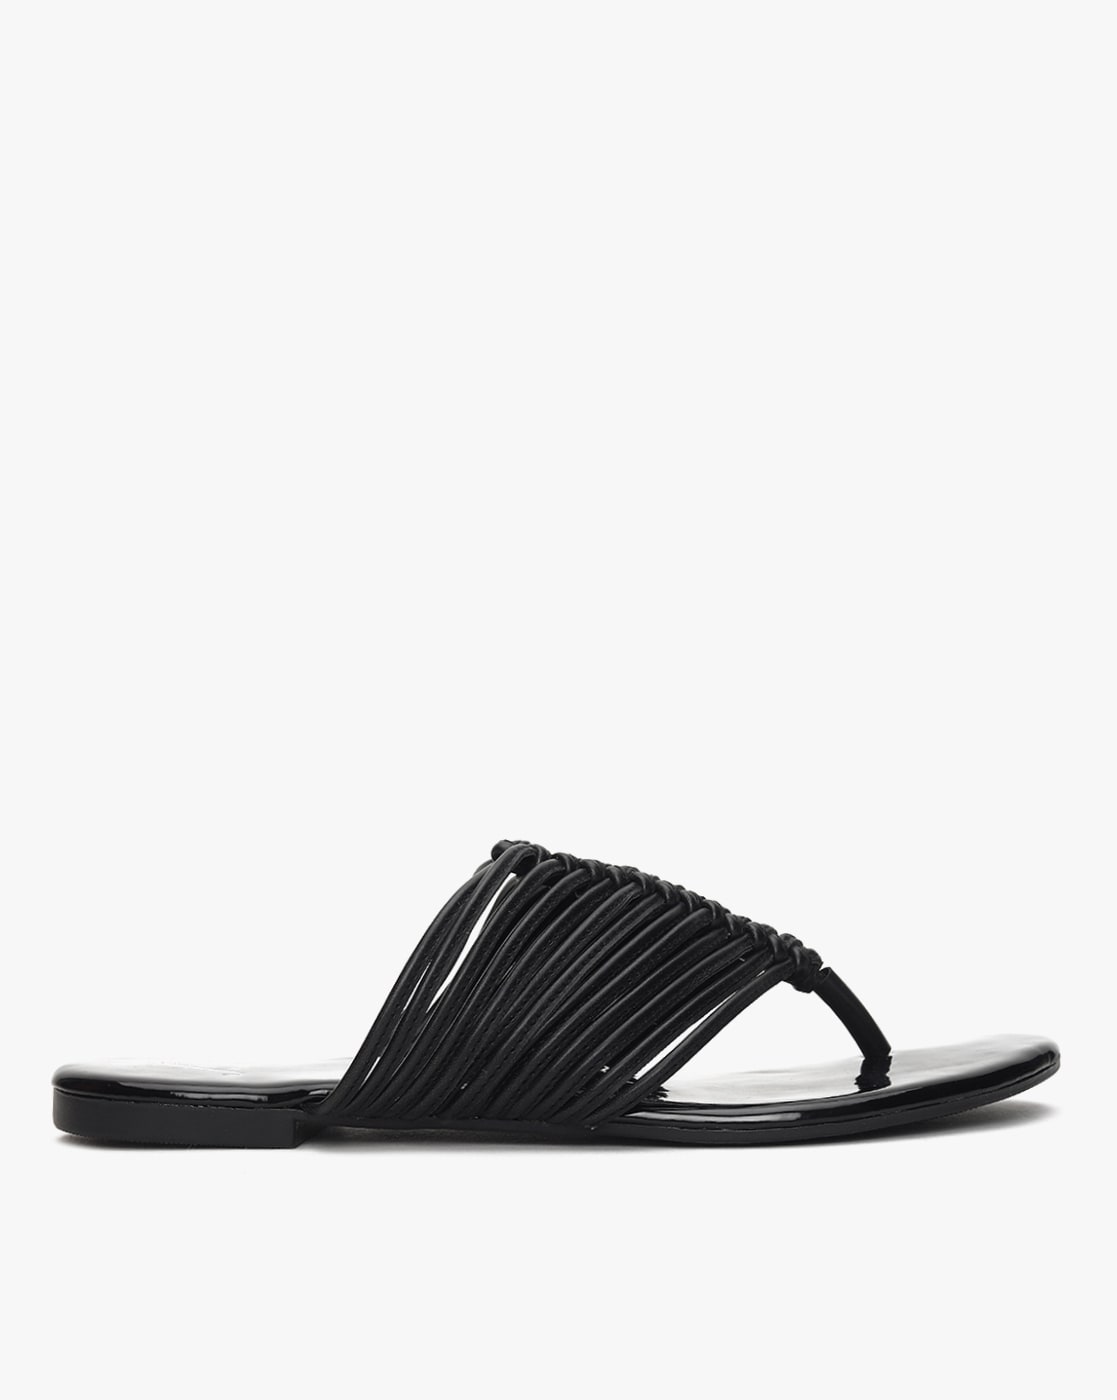 Buy Inc.5 Beige Casual Flat Sandals online